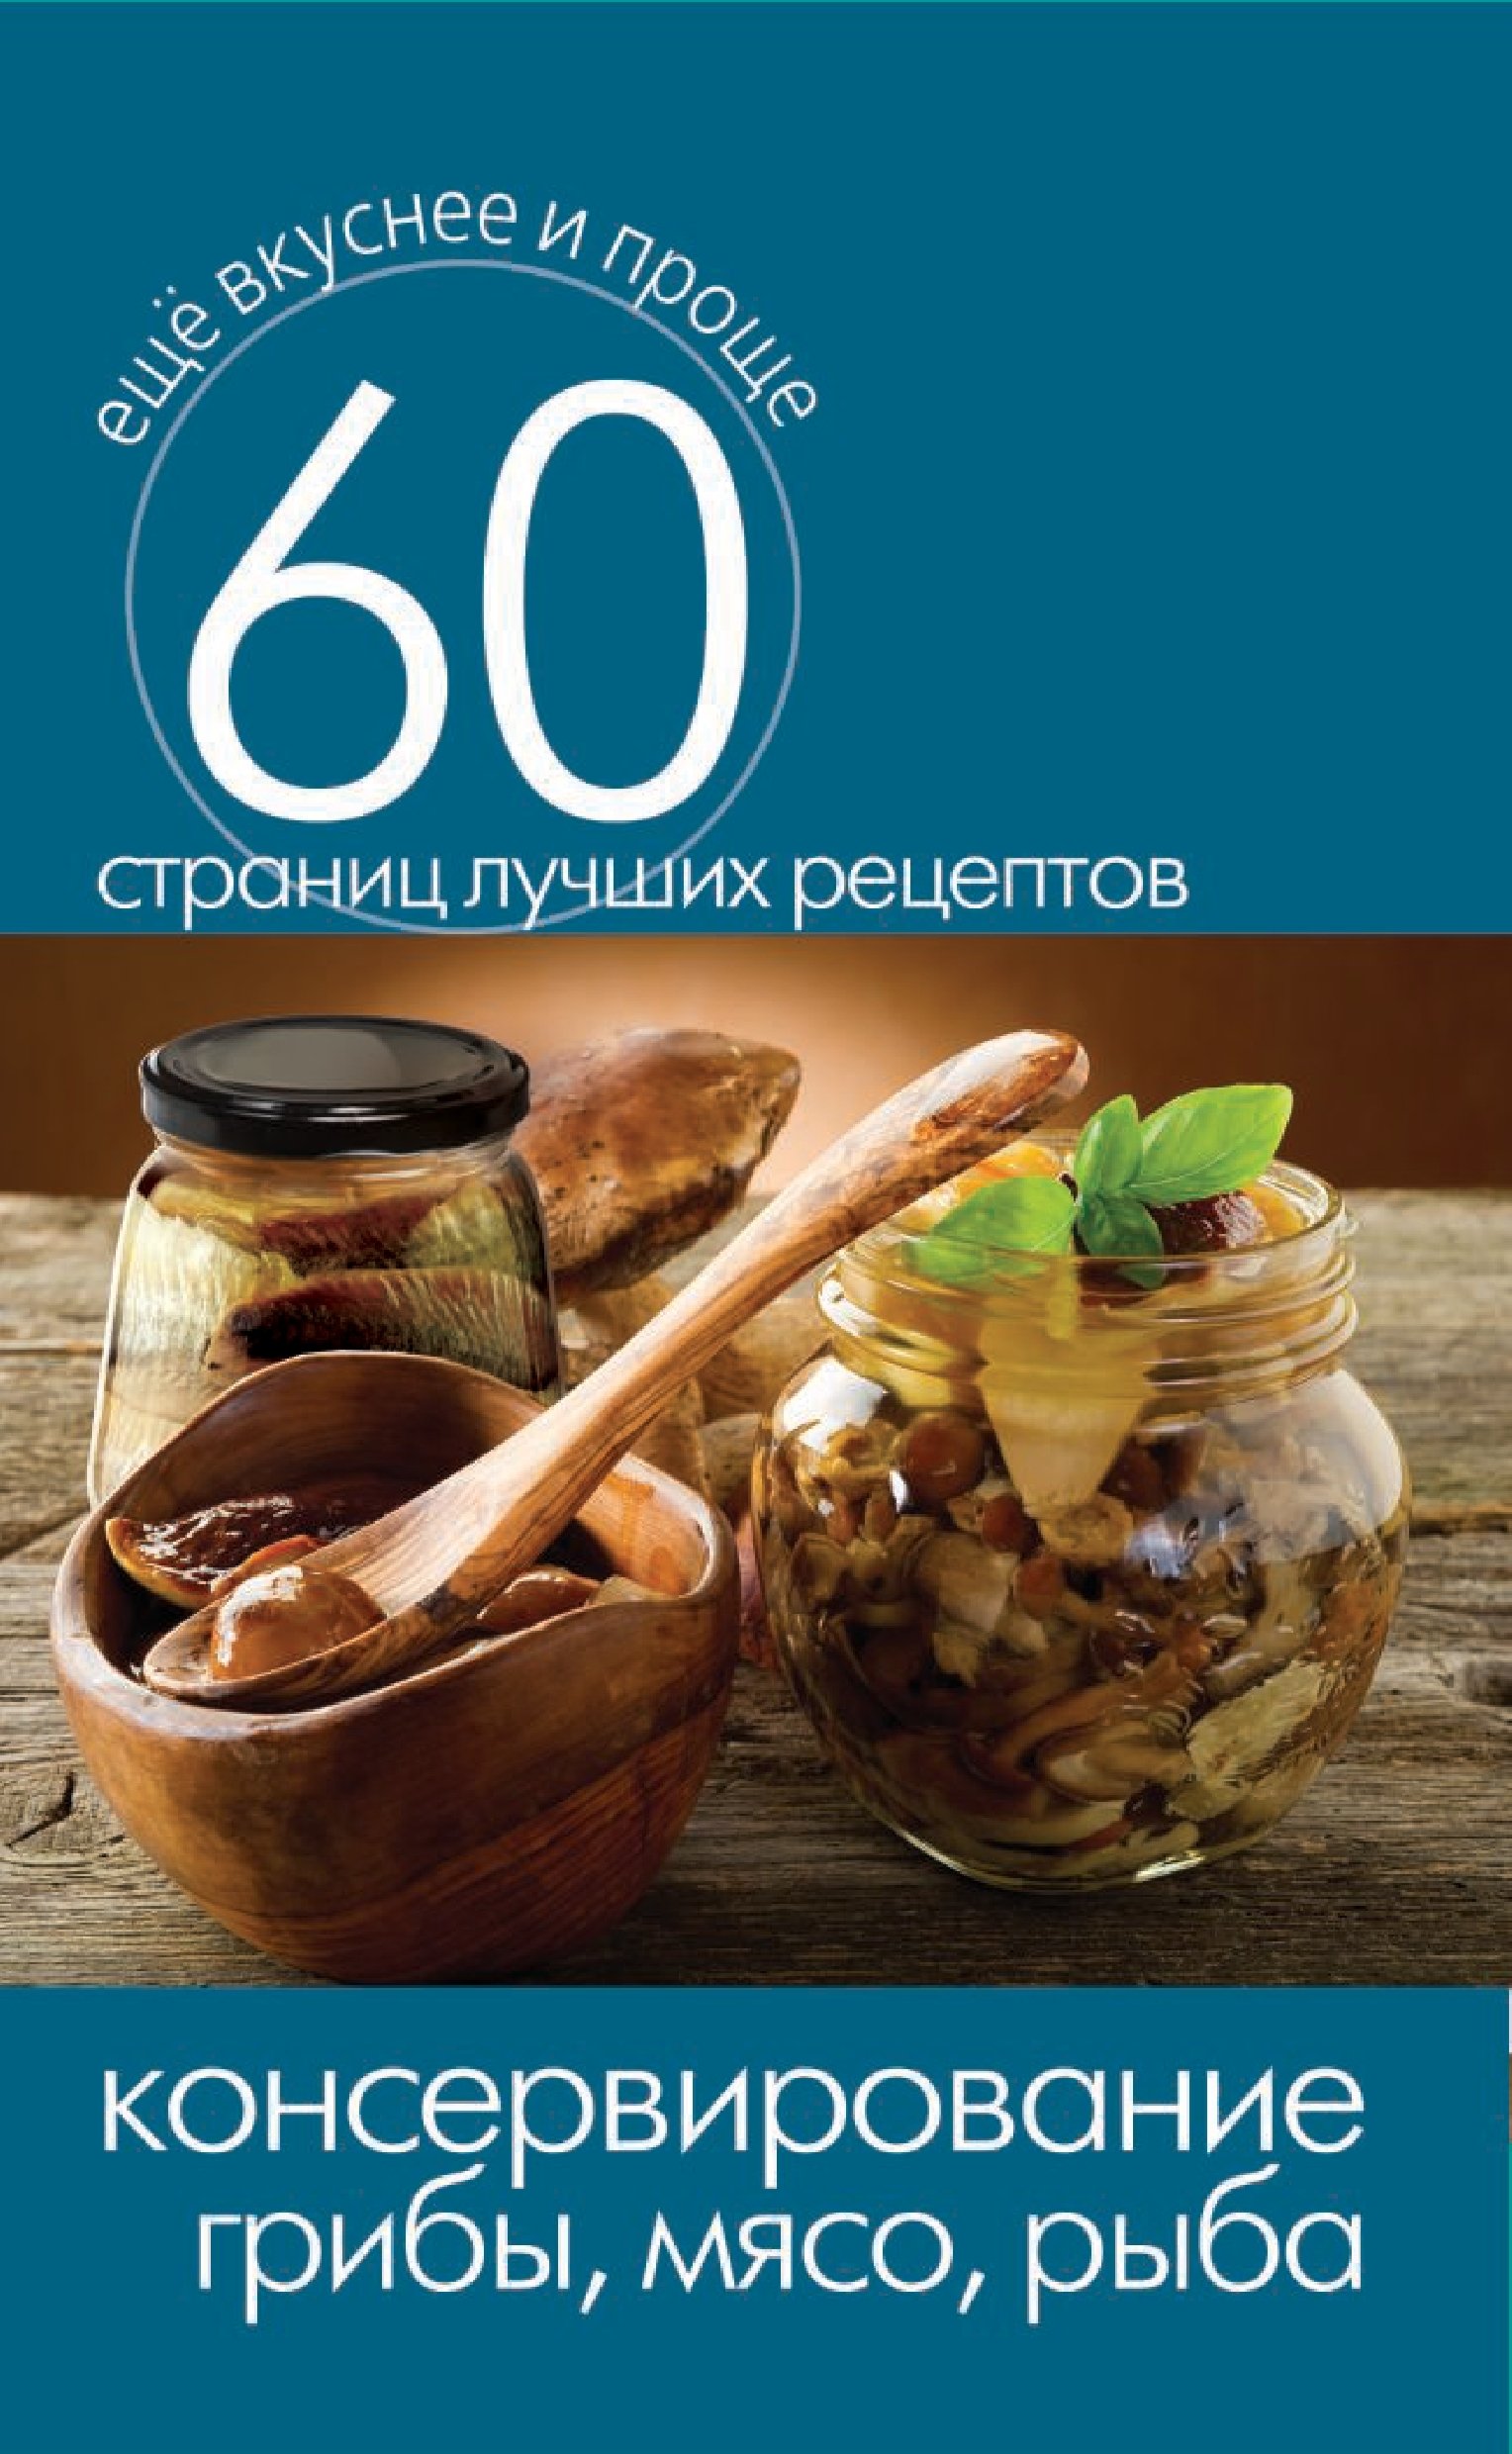 Консервирование. Грибы, мясо, рыба (Russian Edition)